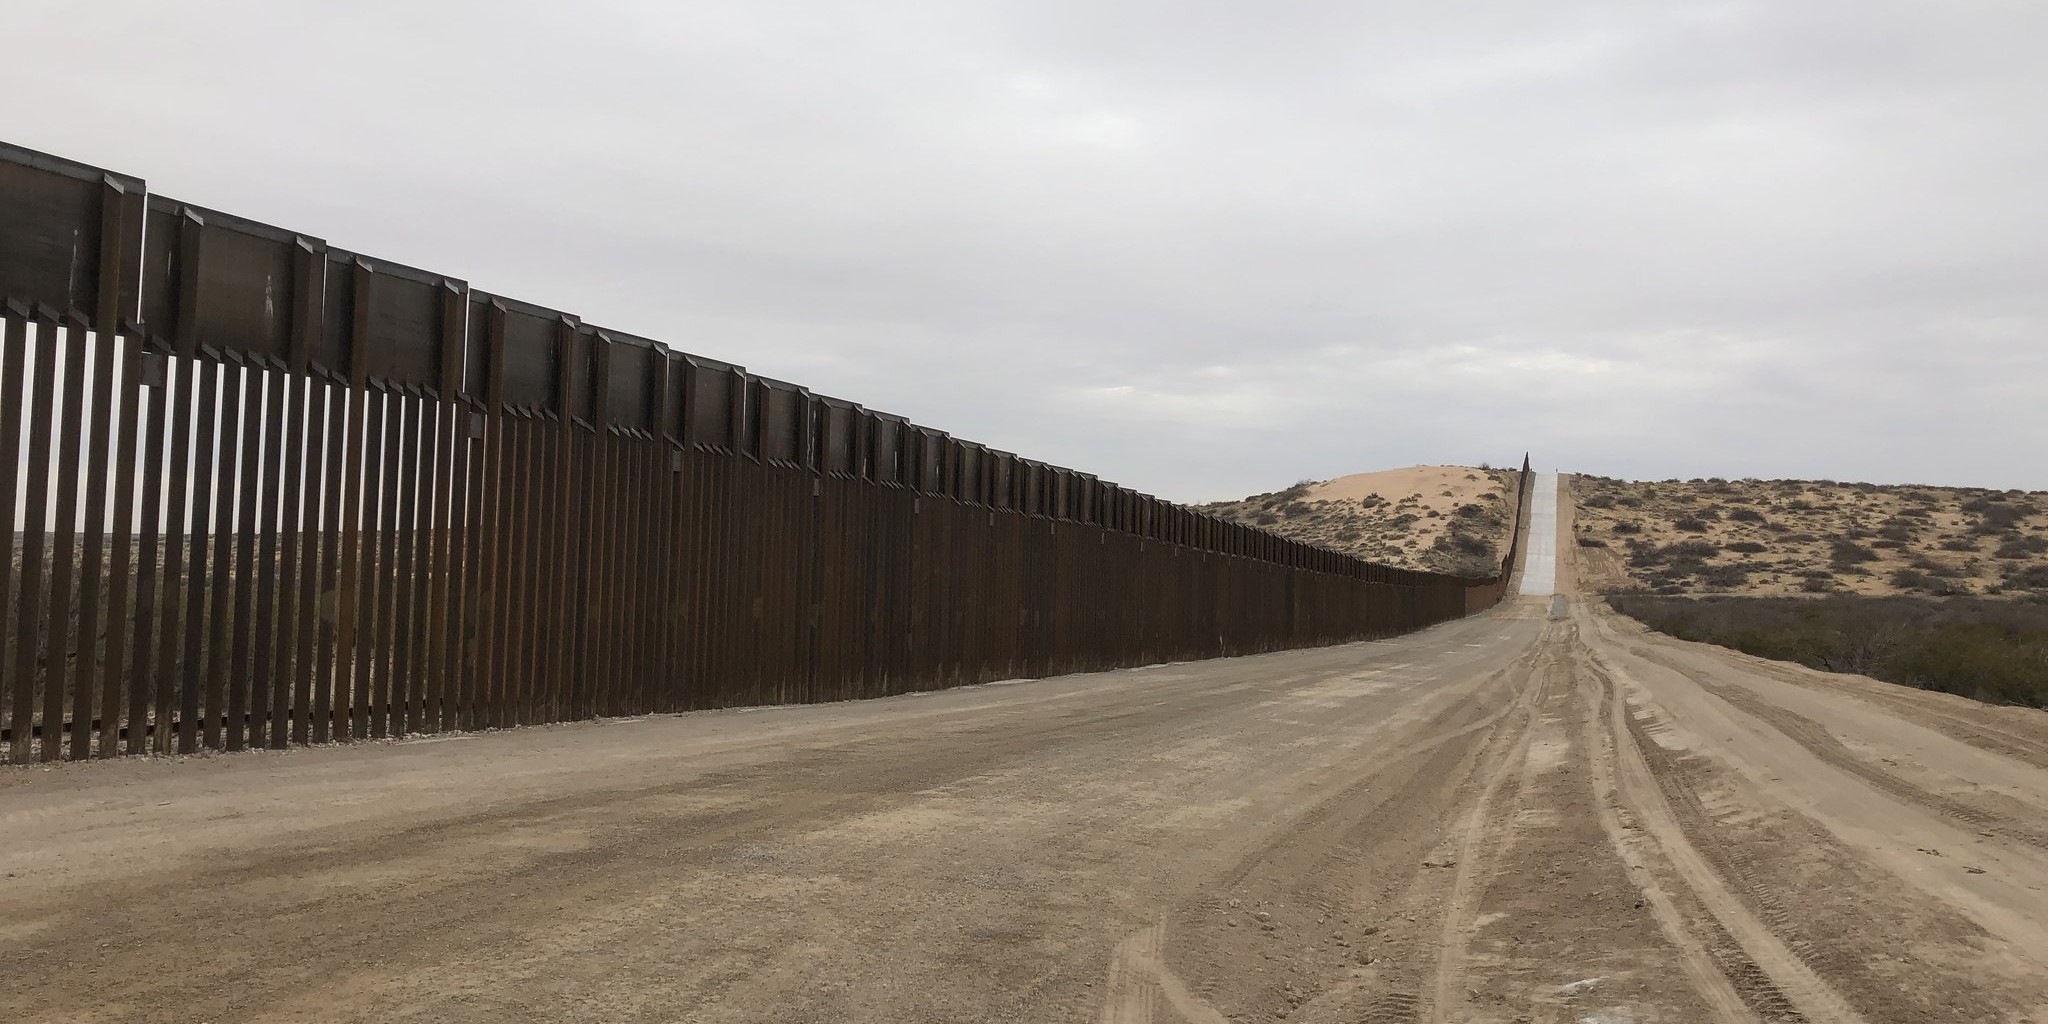 US/Mexico border wall in Arizona. Photo: Flickr/Russ McSpadden